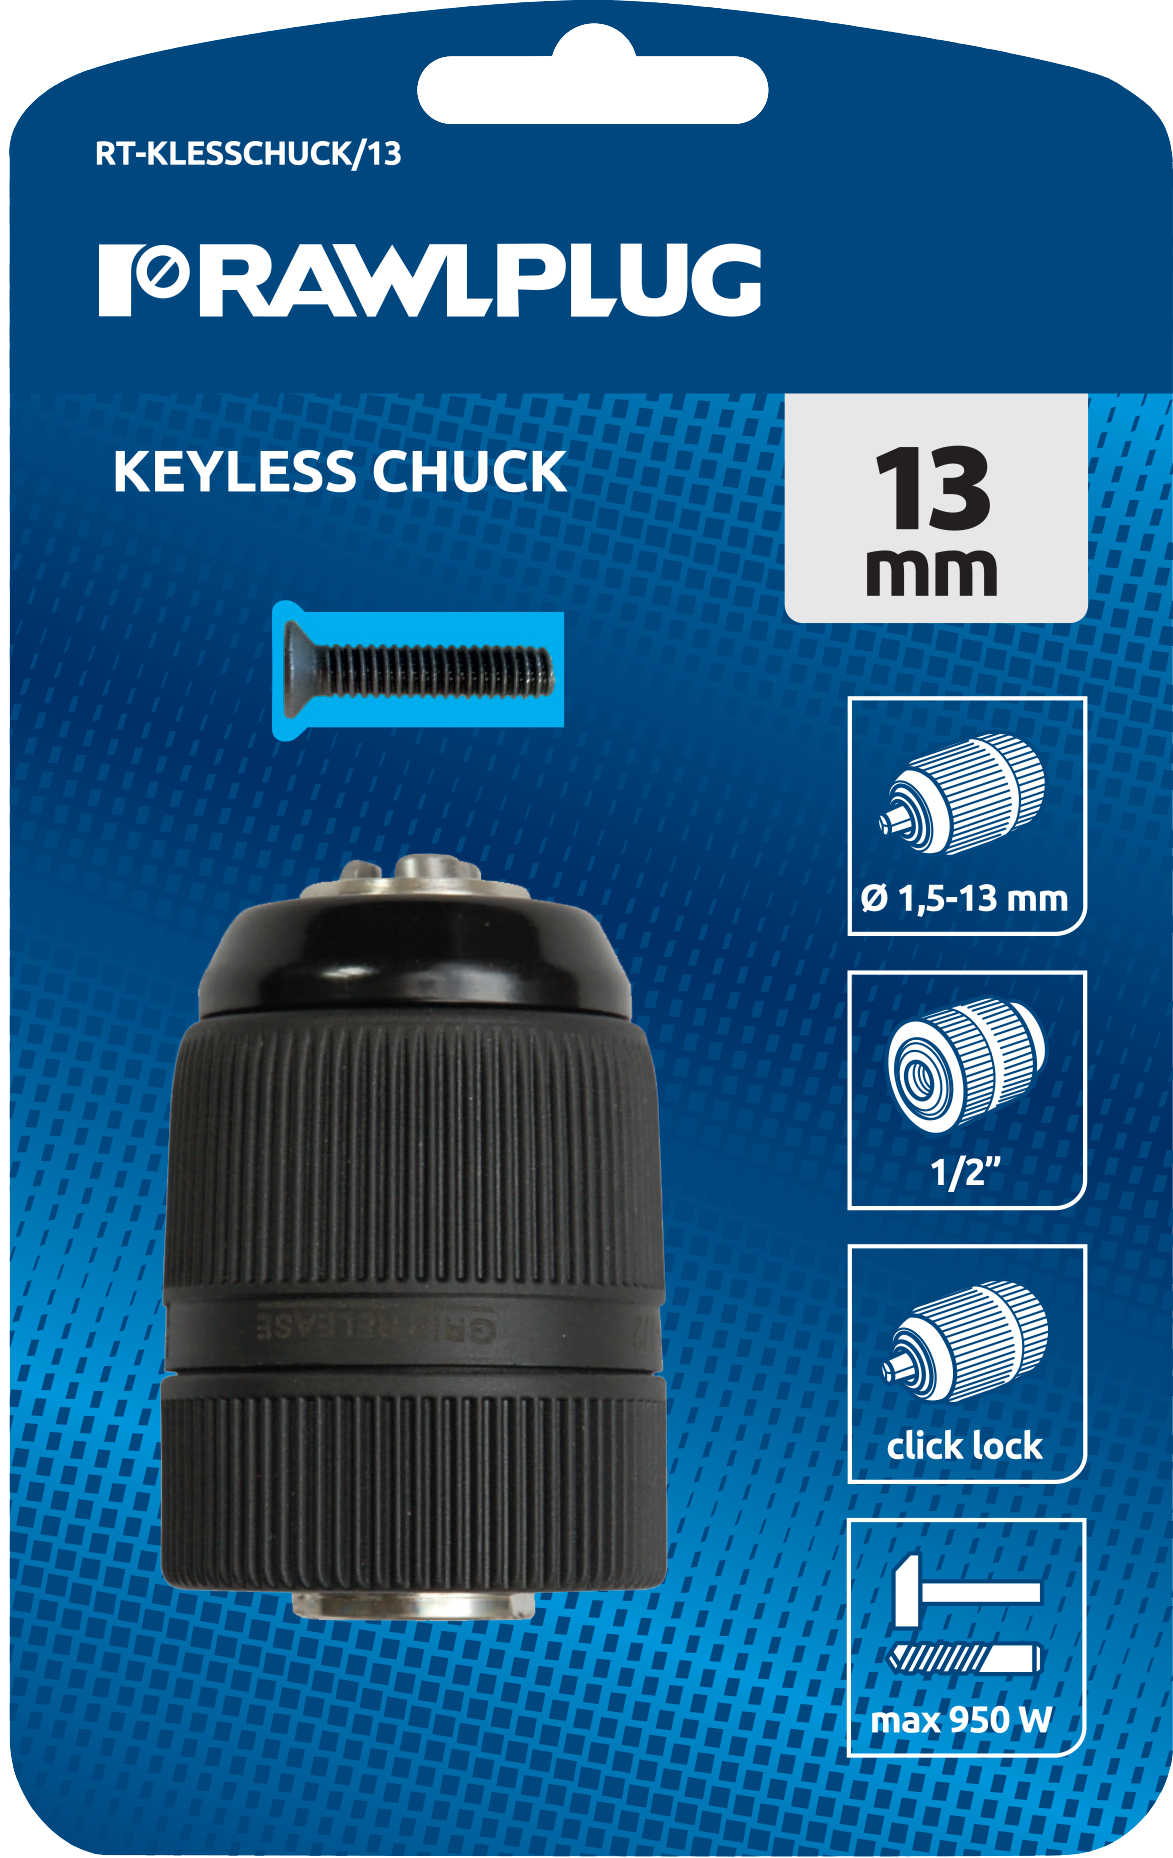 RT-KLESSCHUCK/13 Keyless chuck